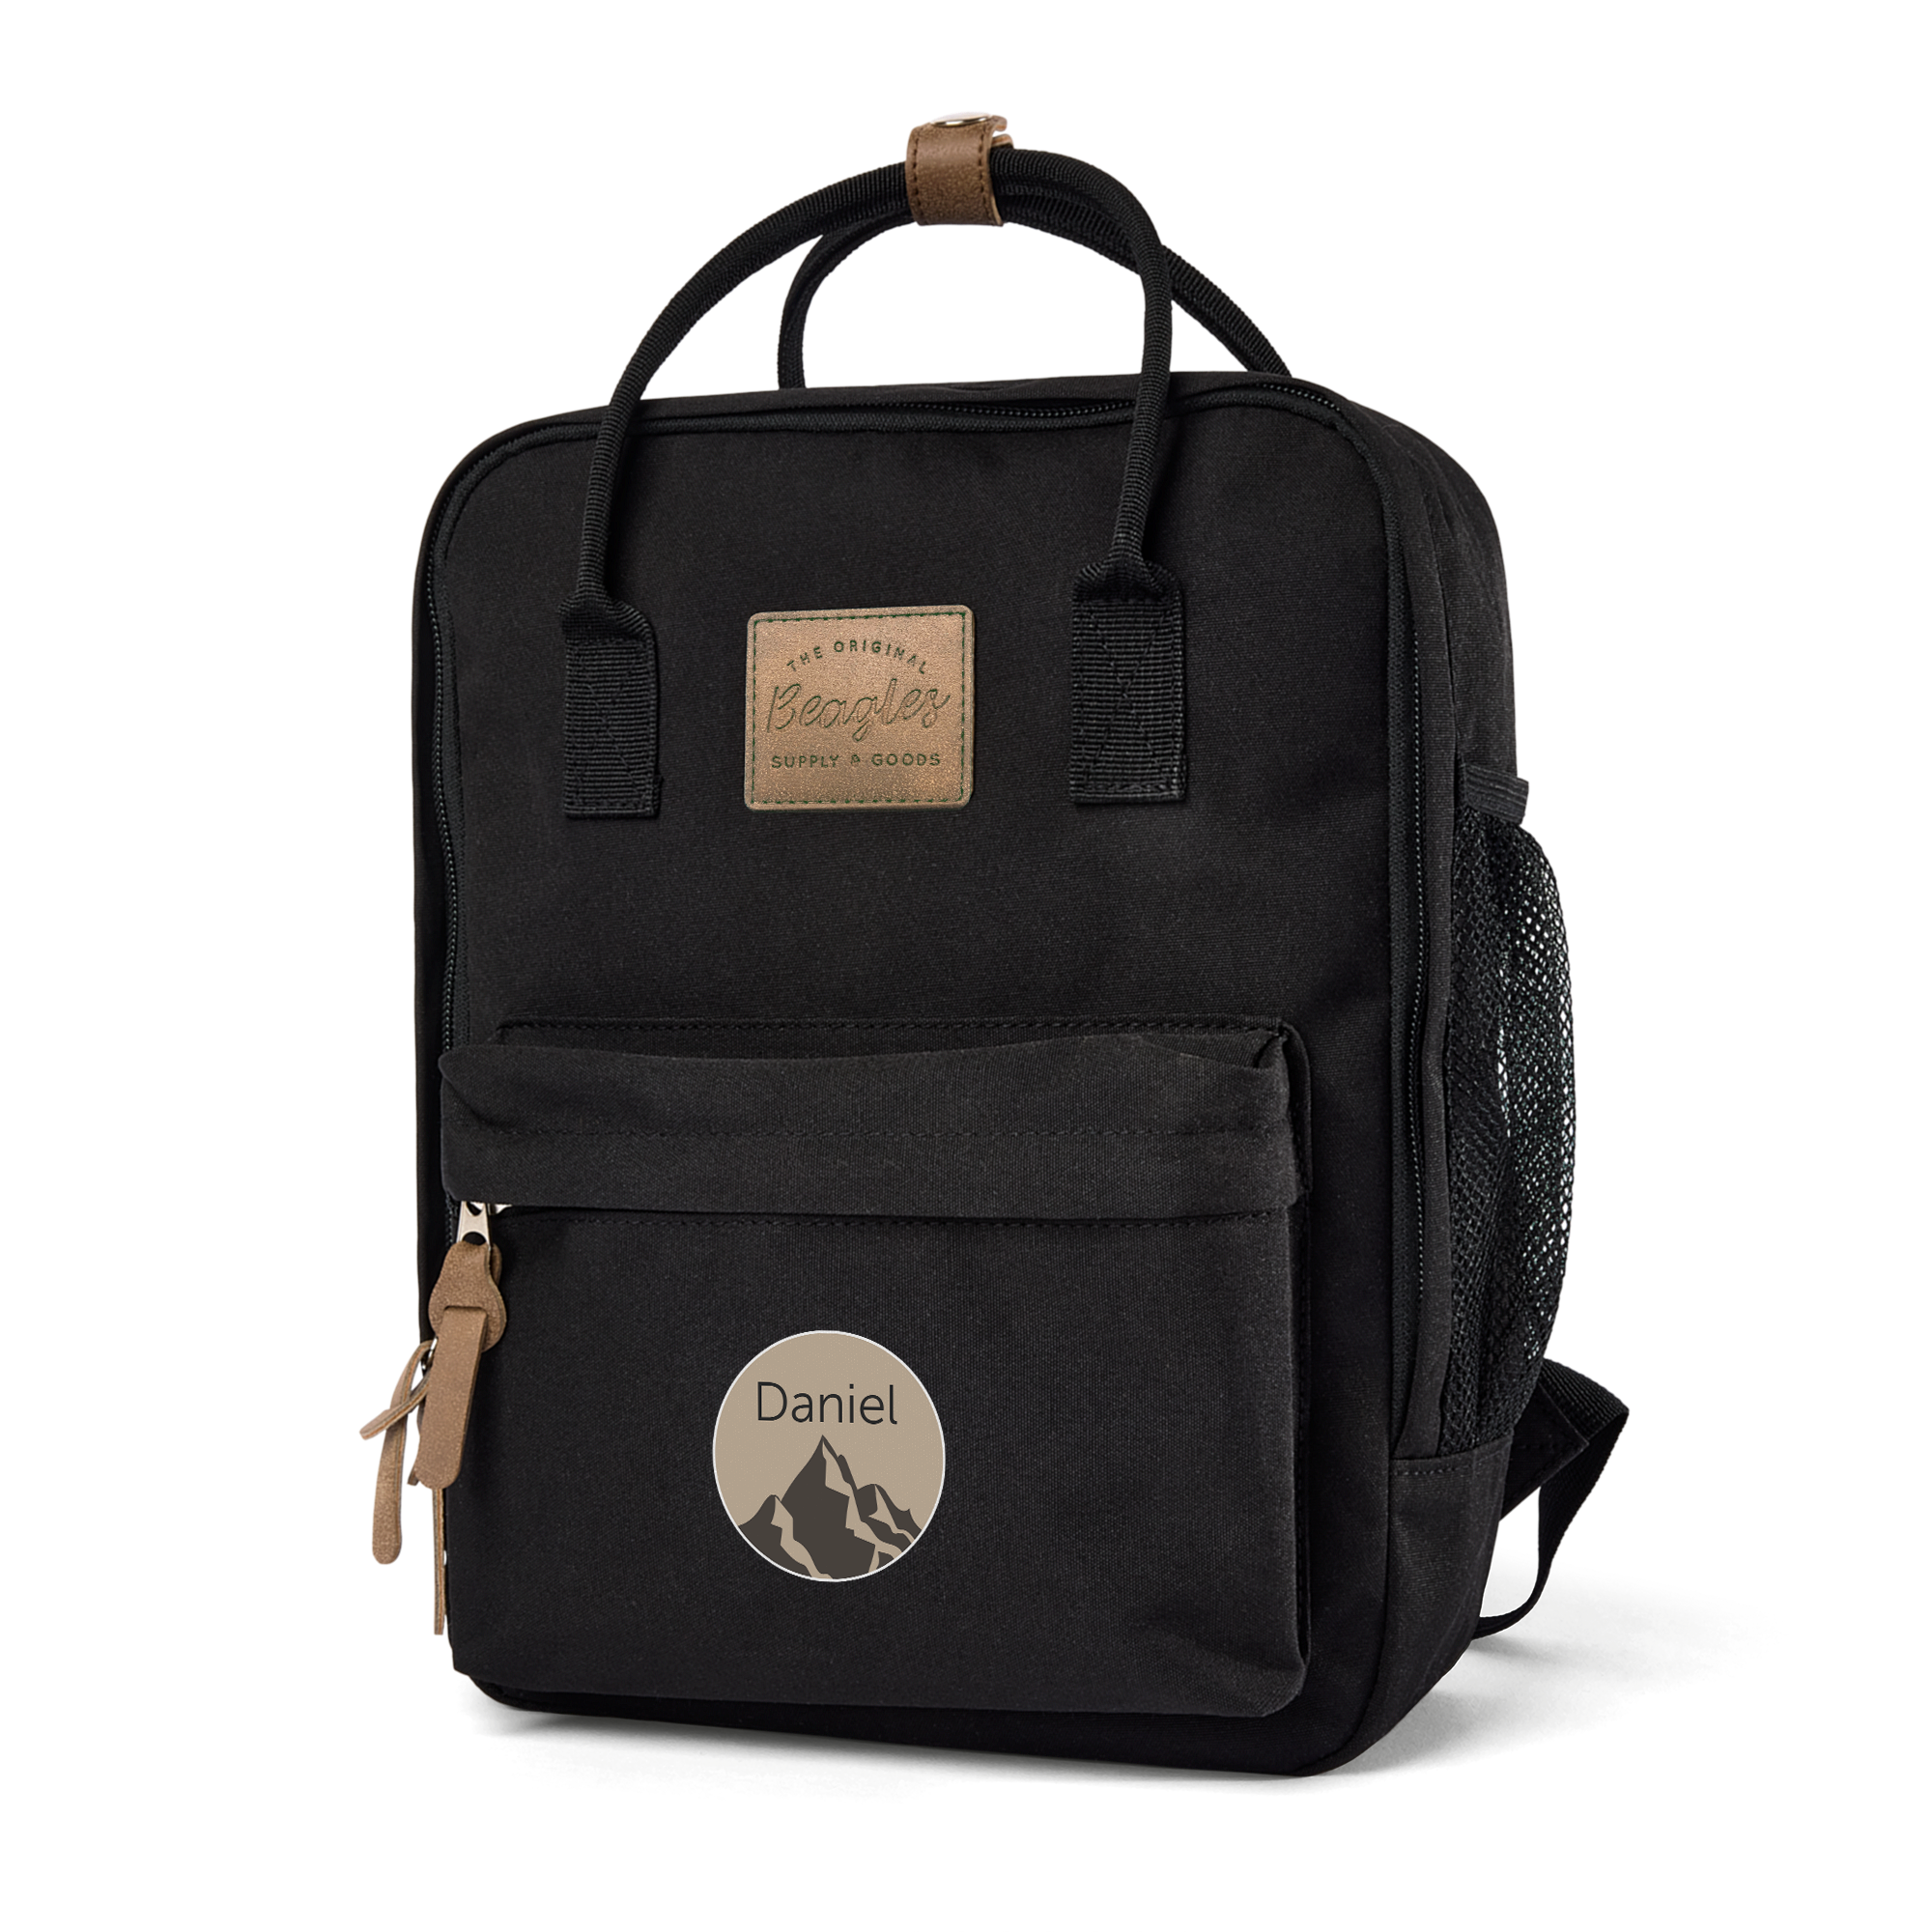 Personalised name backpack - Black